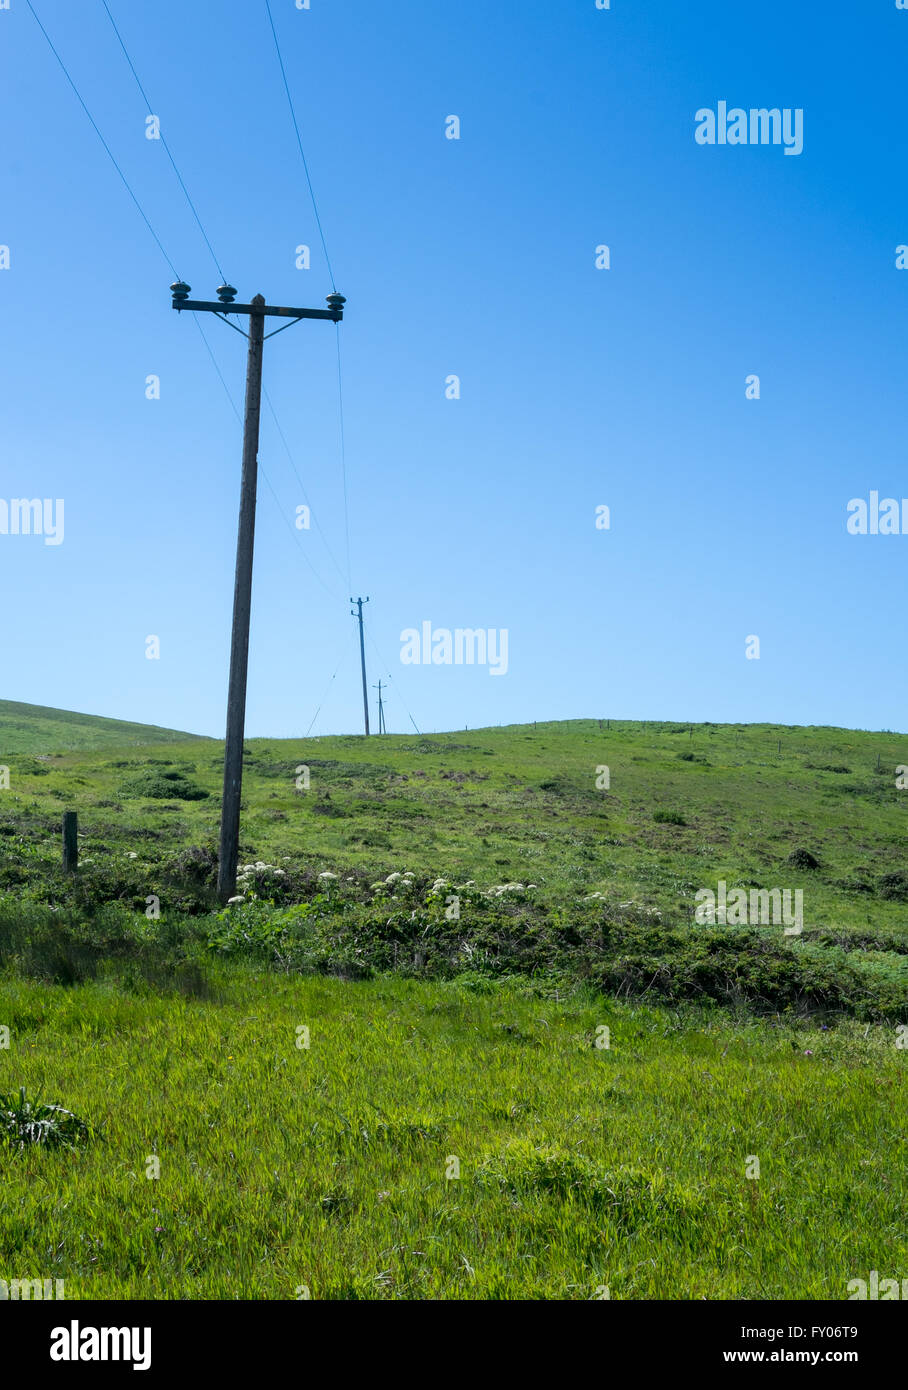 Postes eléctricos cruzando y subiendo por una ladera de hierba verde con un fondo de cielo azul Foto de stock